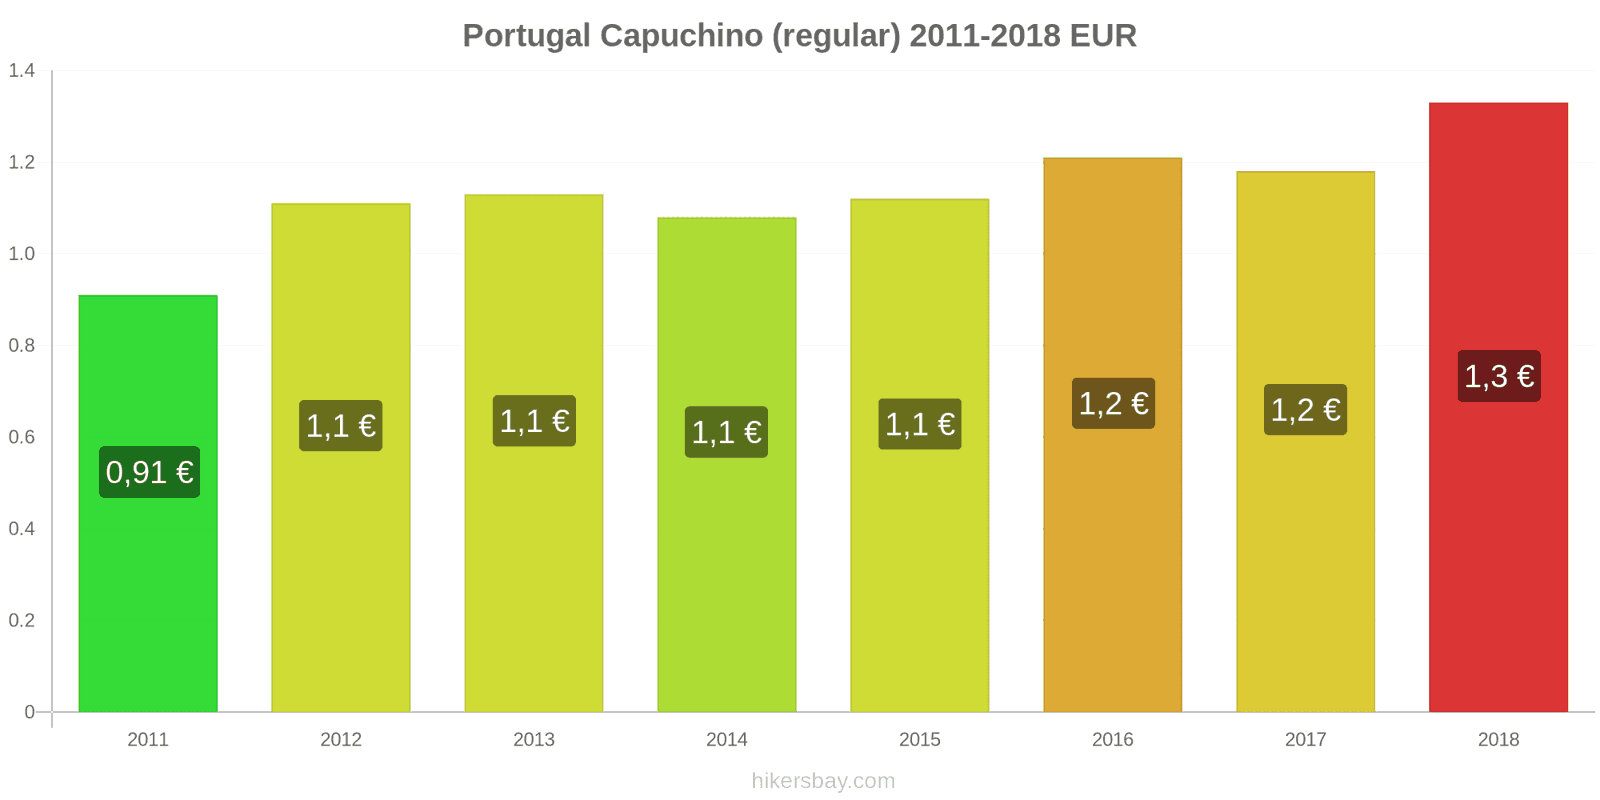 Portugal cambios de precios Cappuccino hikersbay.com